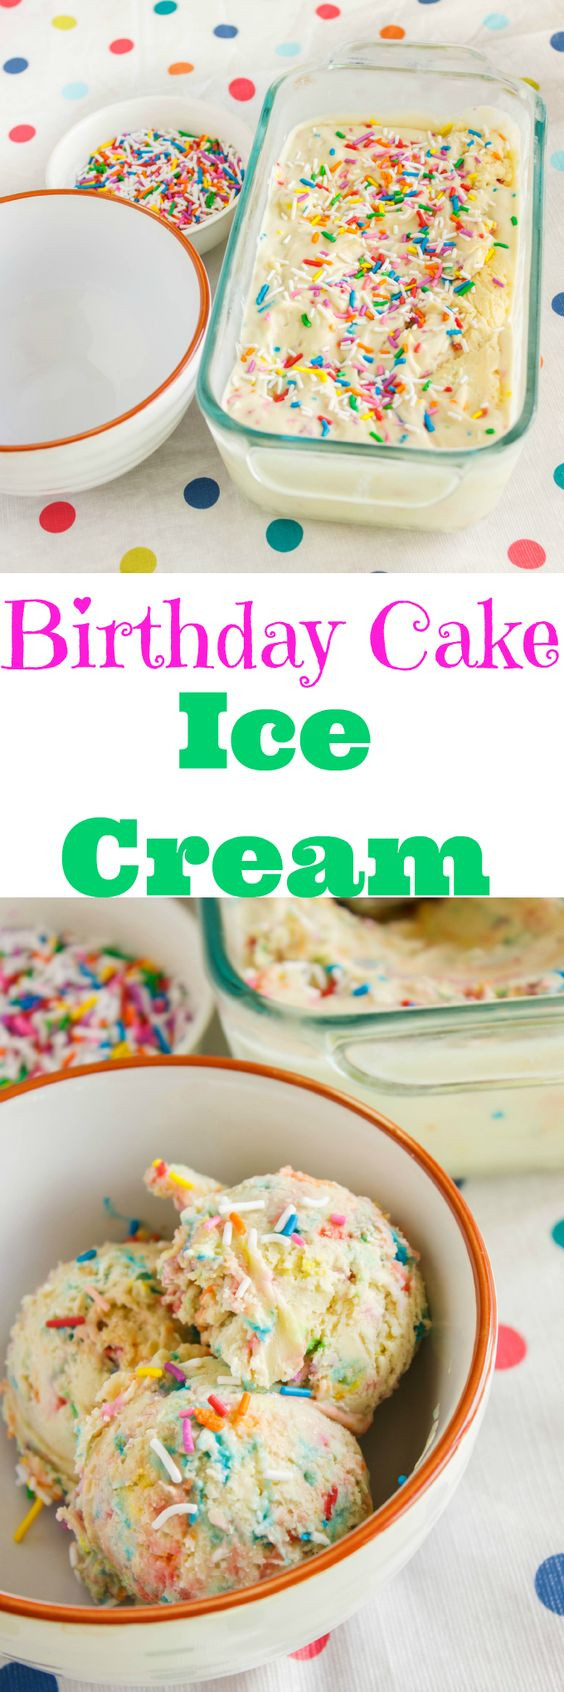 Birthday Cake Ice Cream Recipe
 Homemade Birthday Cake Ice Cream Recipe